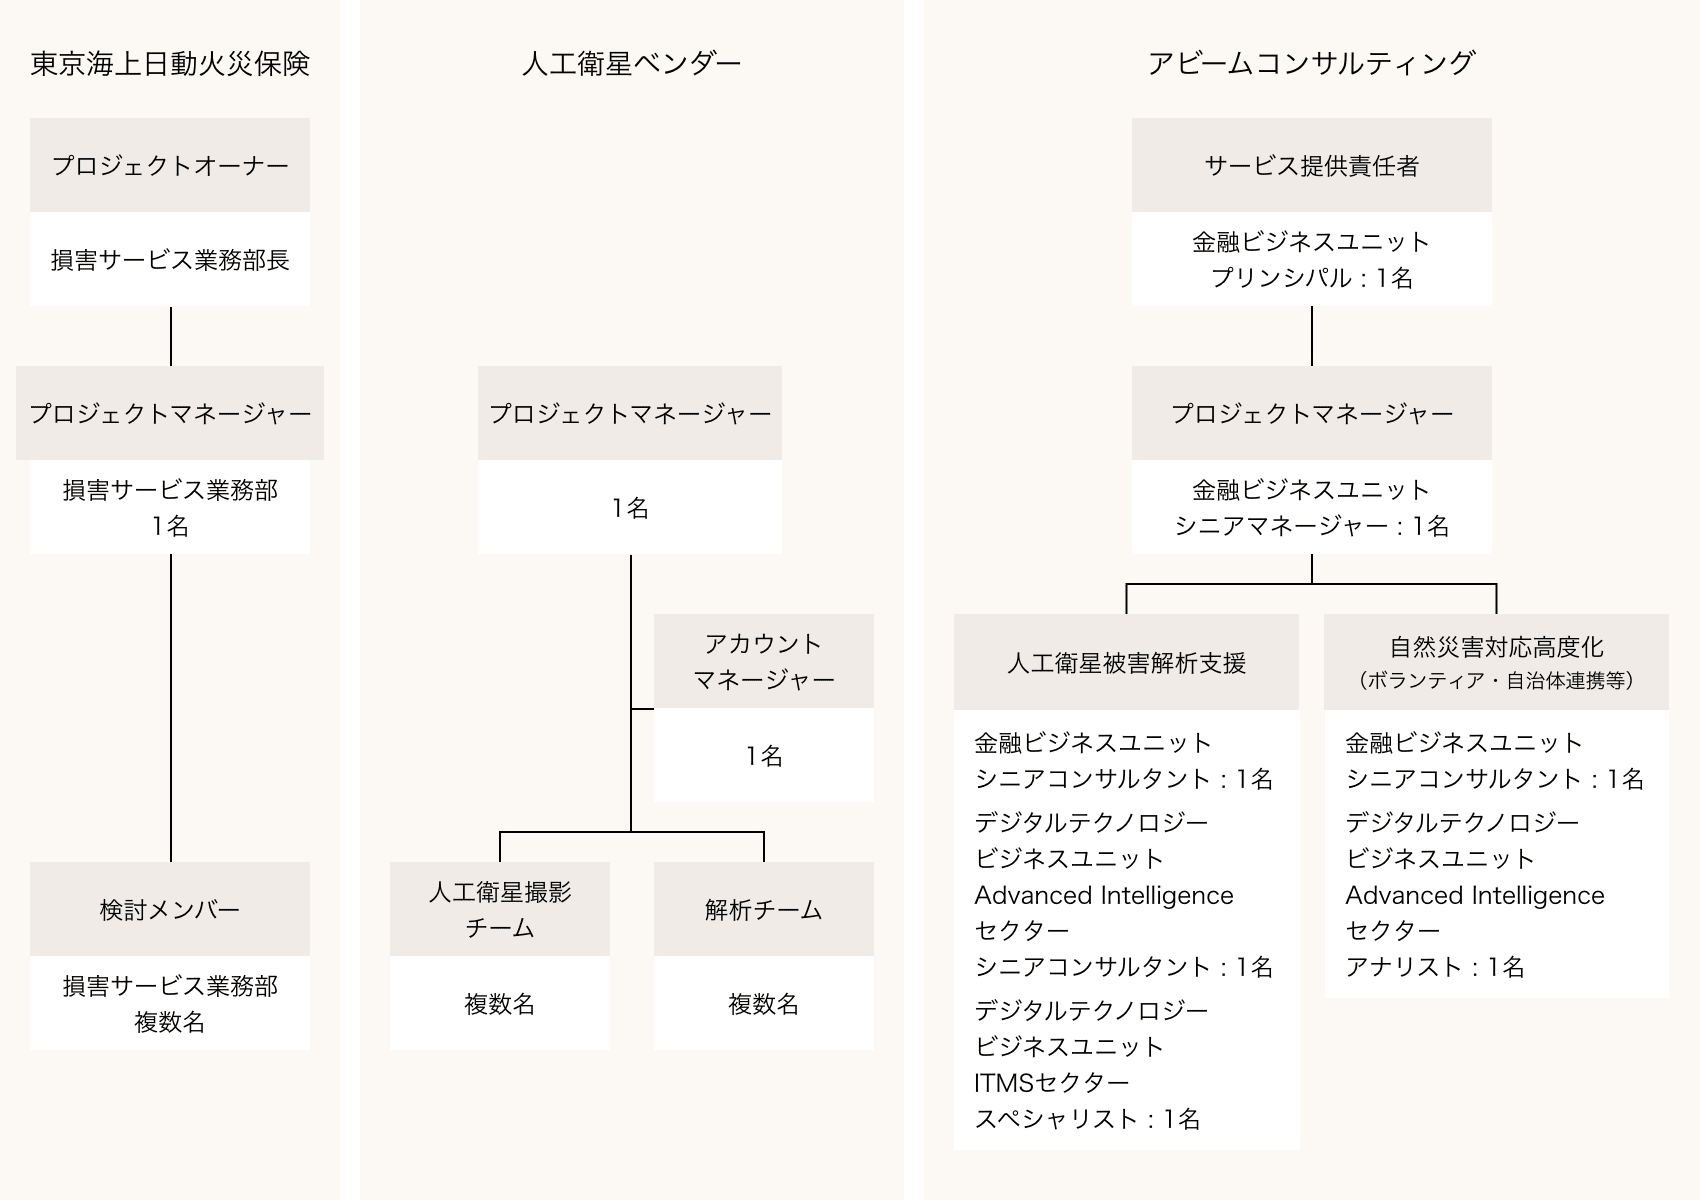 プロジェクト体制の図